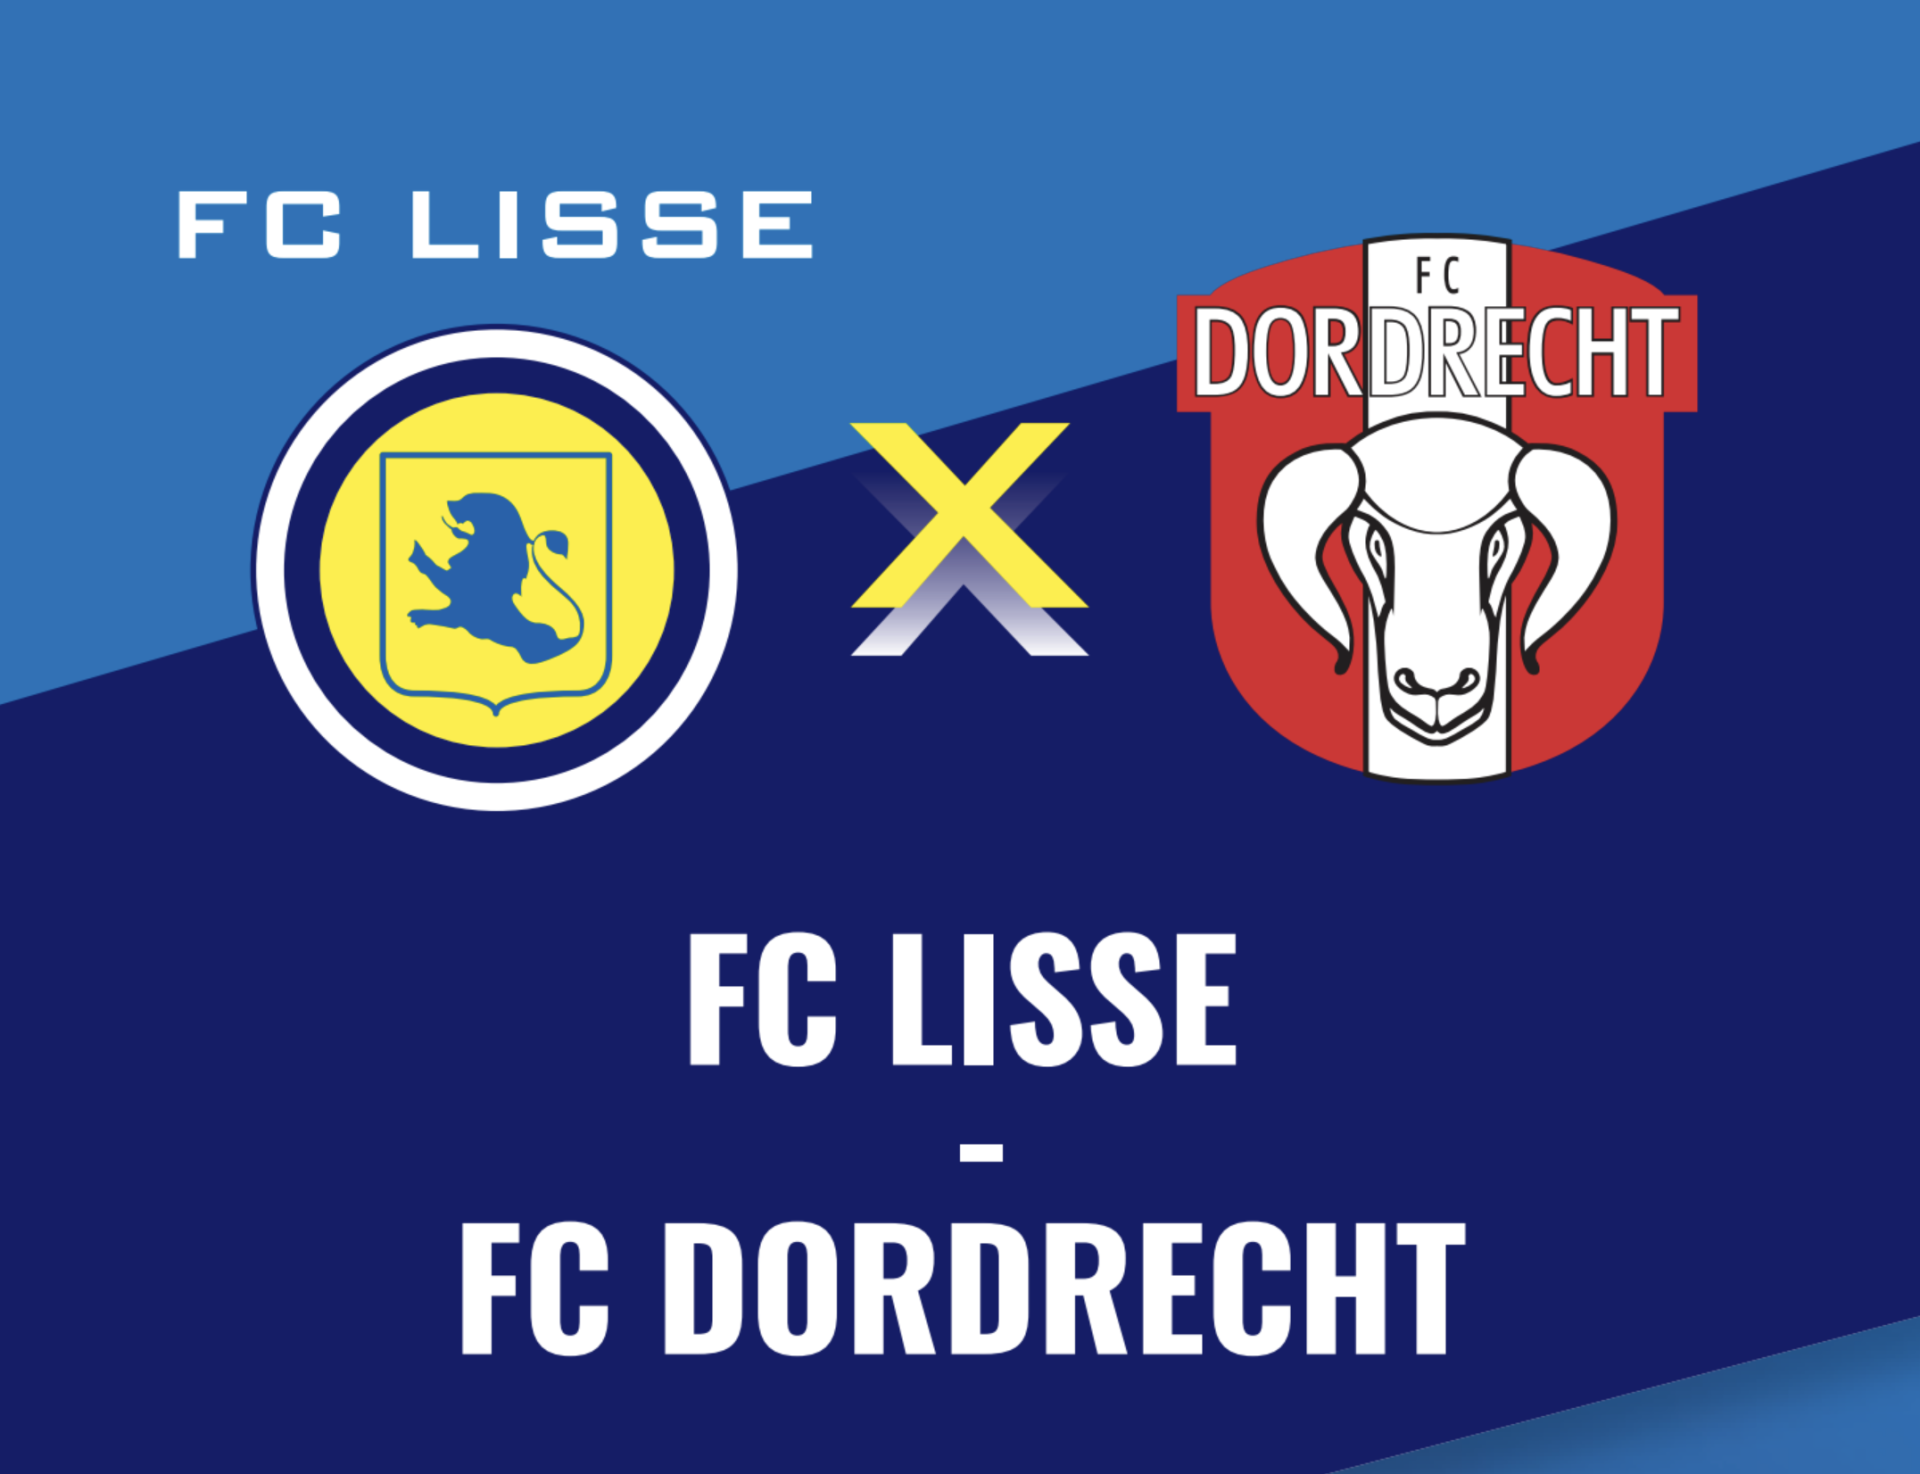 Aangescherpte maatregelen tijdens FC Lisse – FC Dordrecht